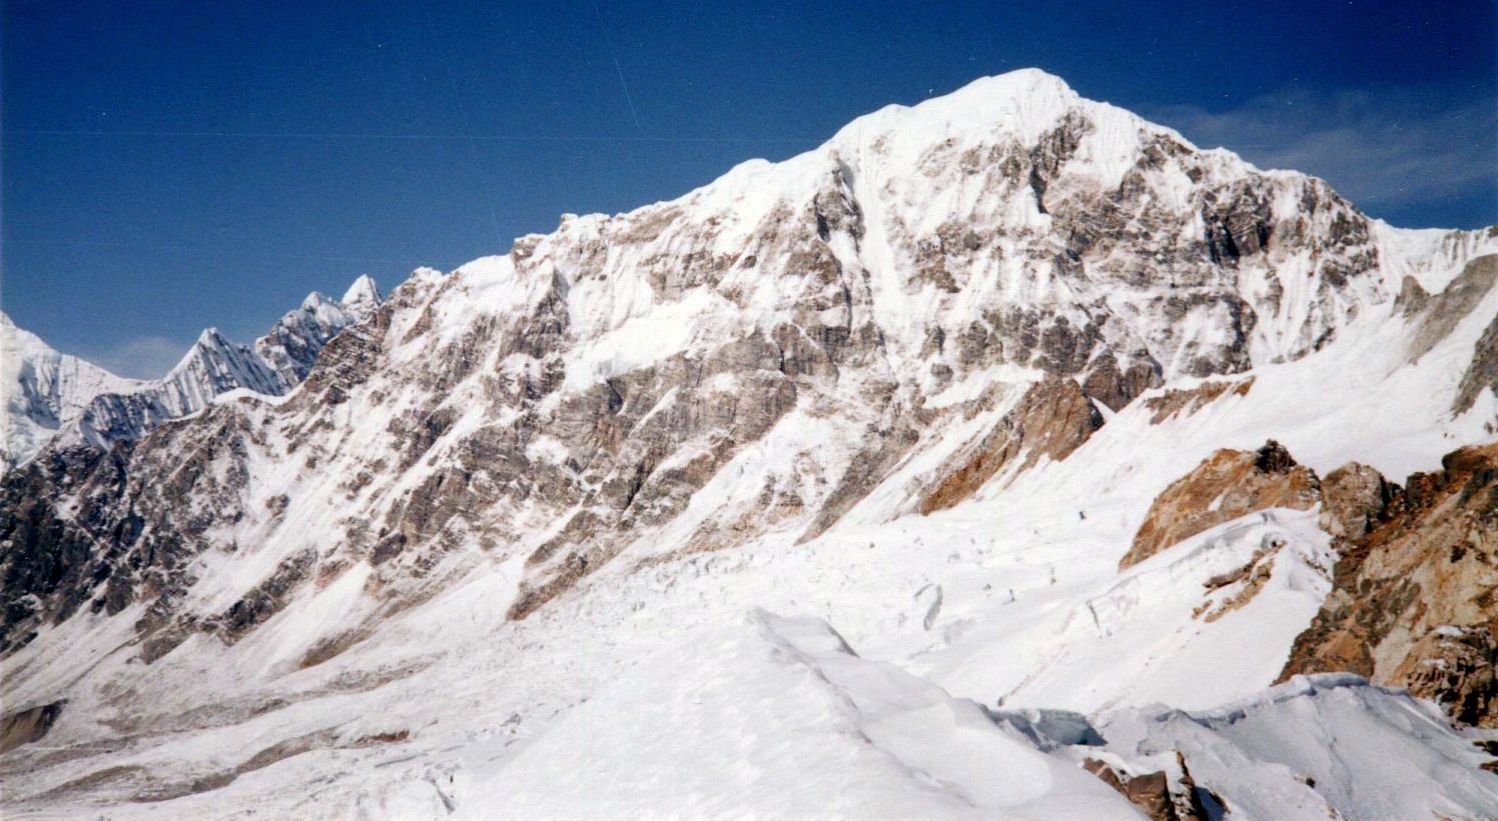 Mt.Langshisa Ri and Dome Blanc from Ganja La Base Camp